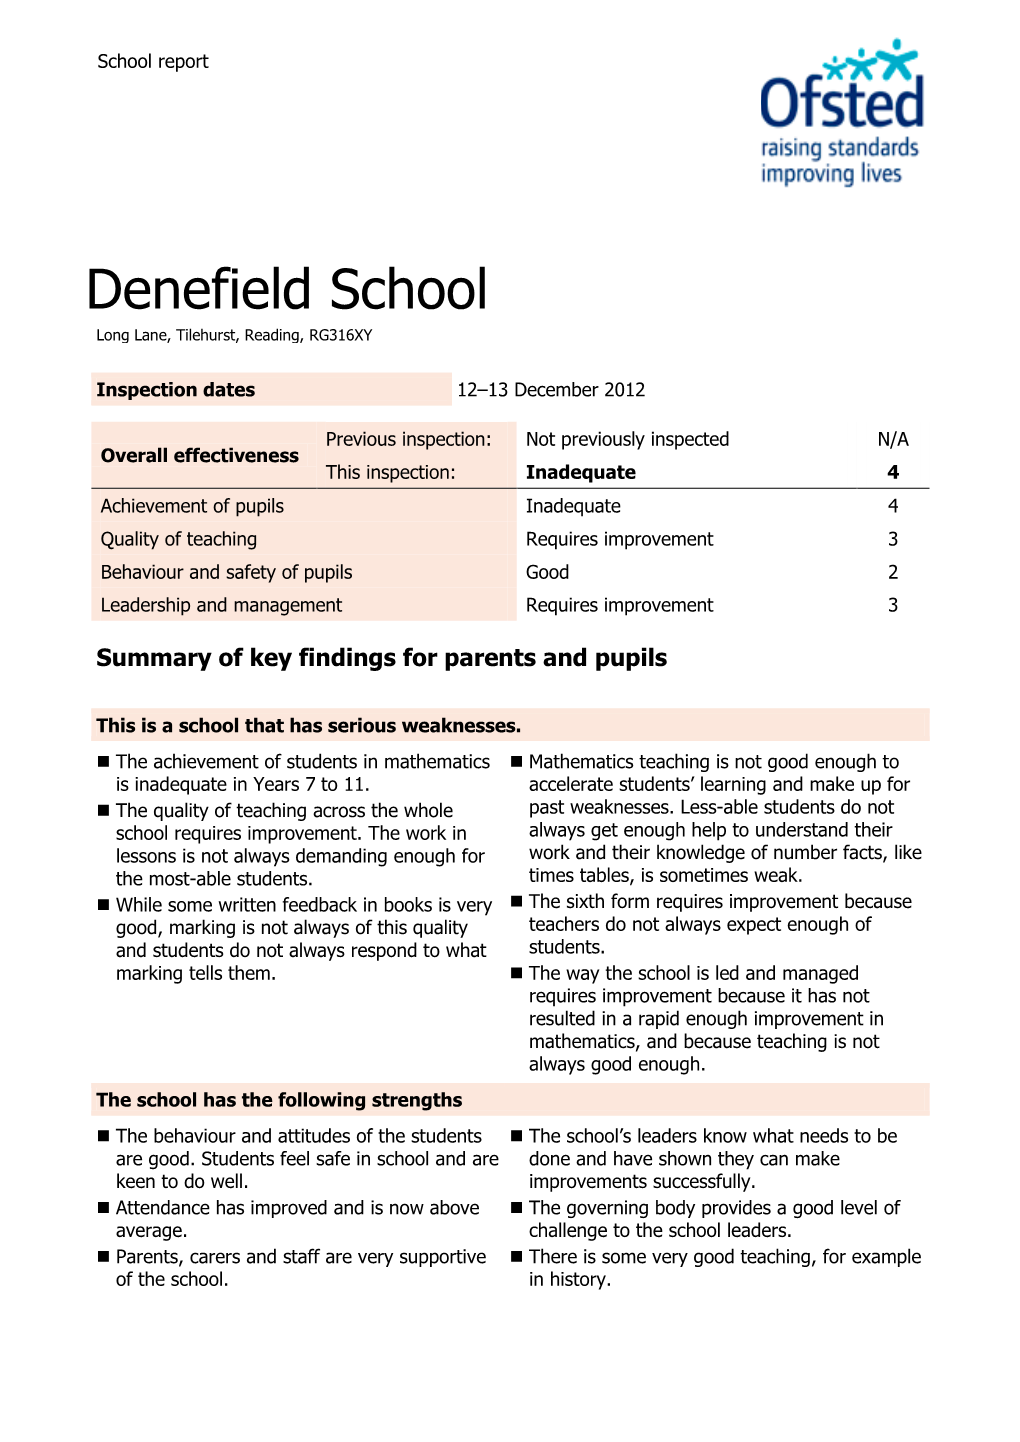 Denefield School Long Lane, Tilehurst, Reading, RG316XY